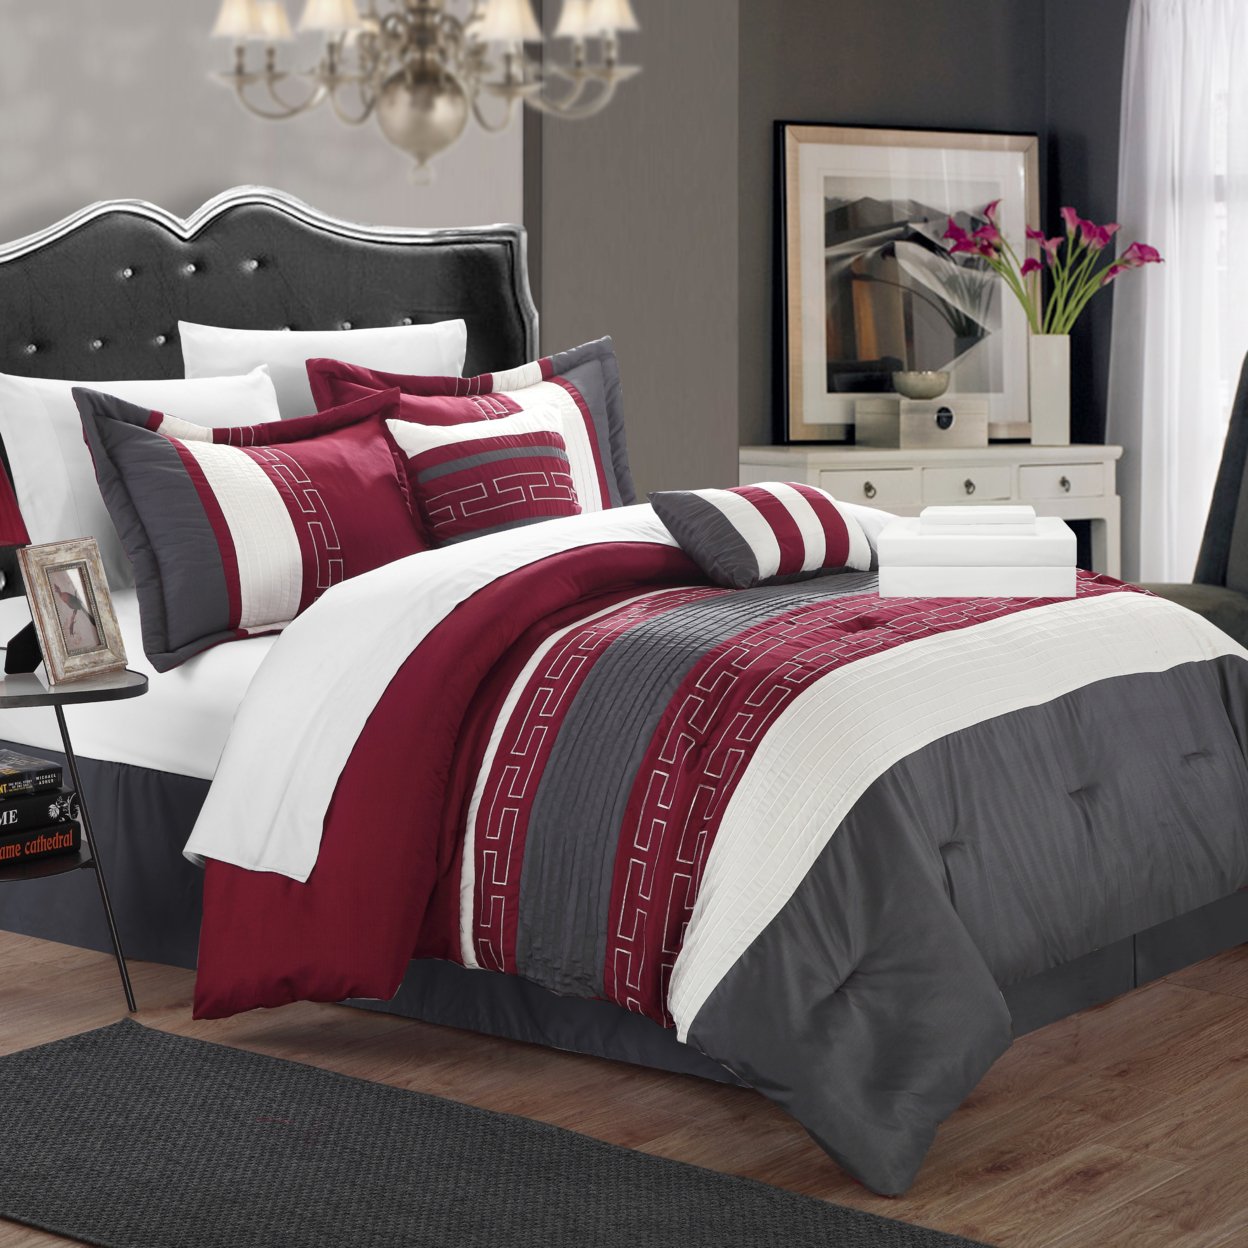 Coralie 10 Piece Bed In A Bag Comforter Set - Grey, Queen